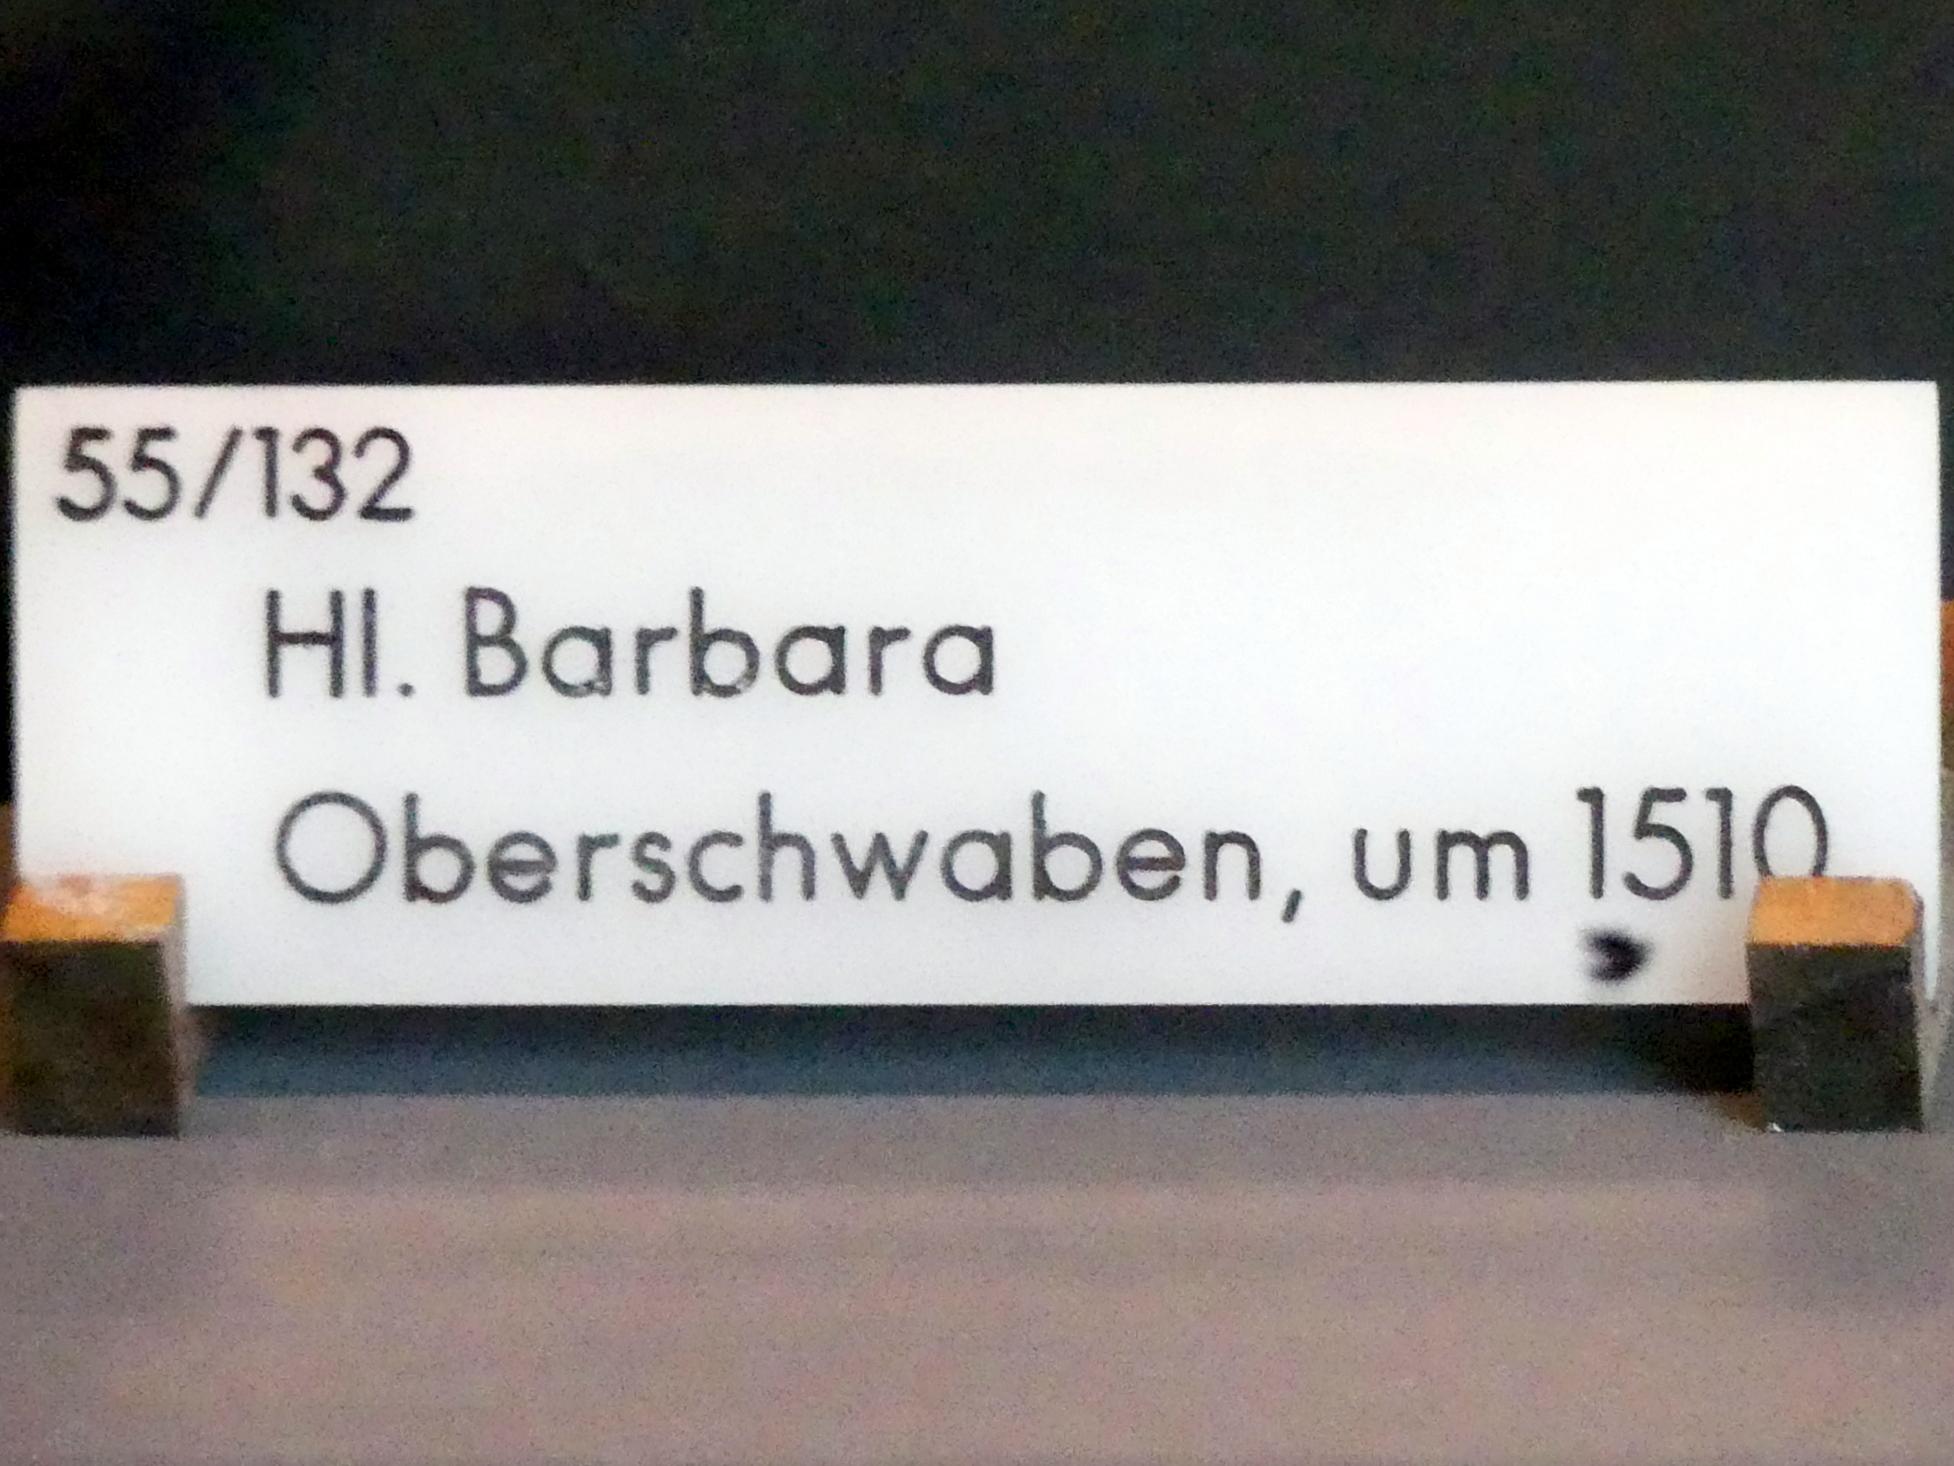 Hl. Barbara, München, Bayerisches Nationalmuseum, Saal 17, um 1510, Bild 2/2